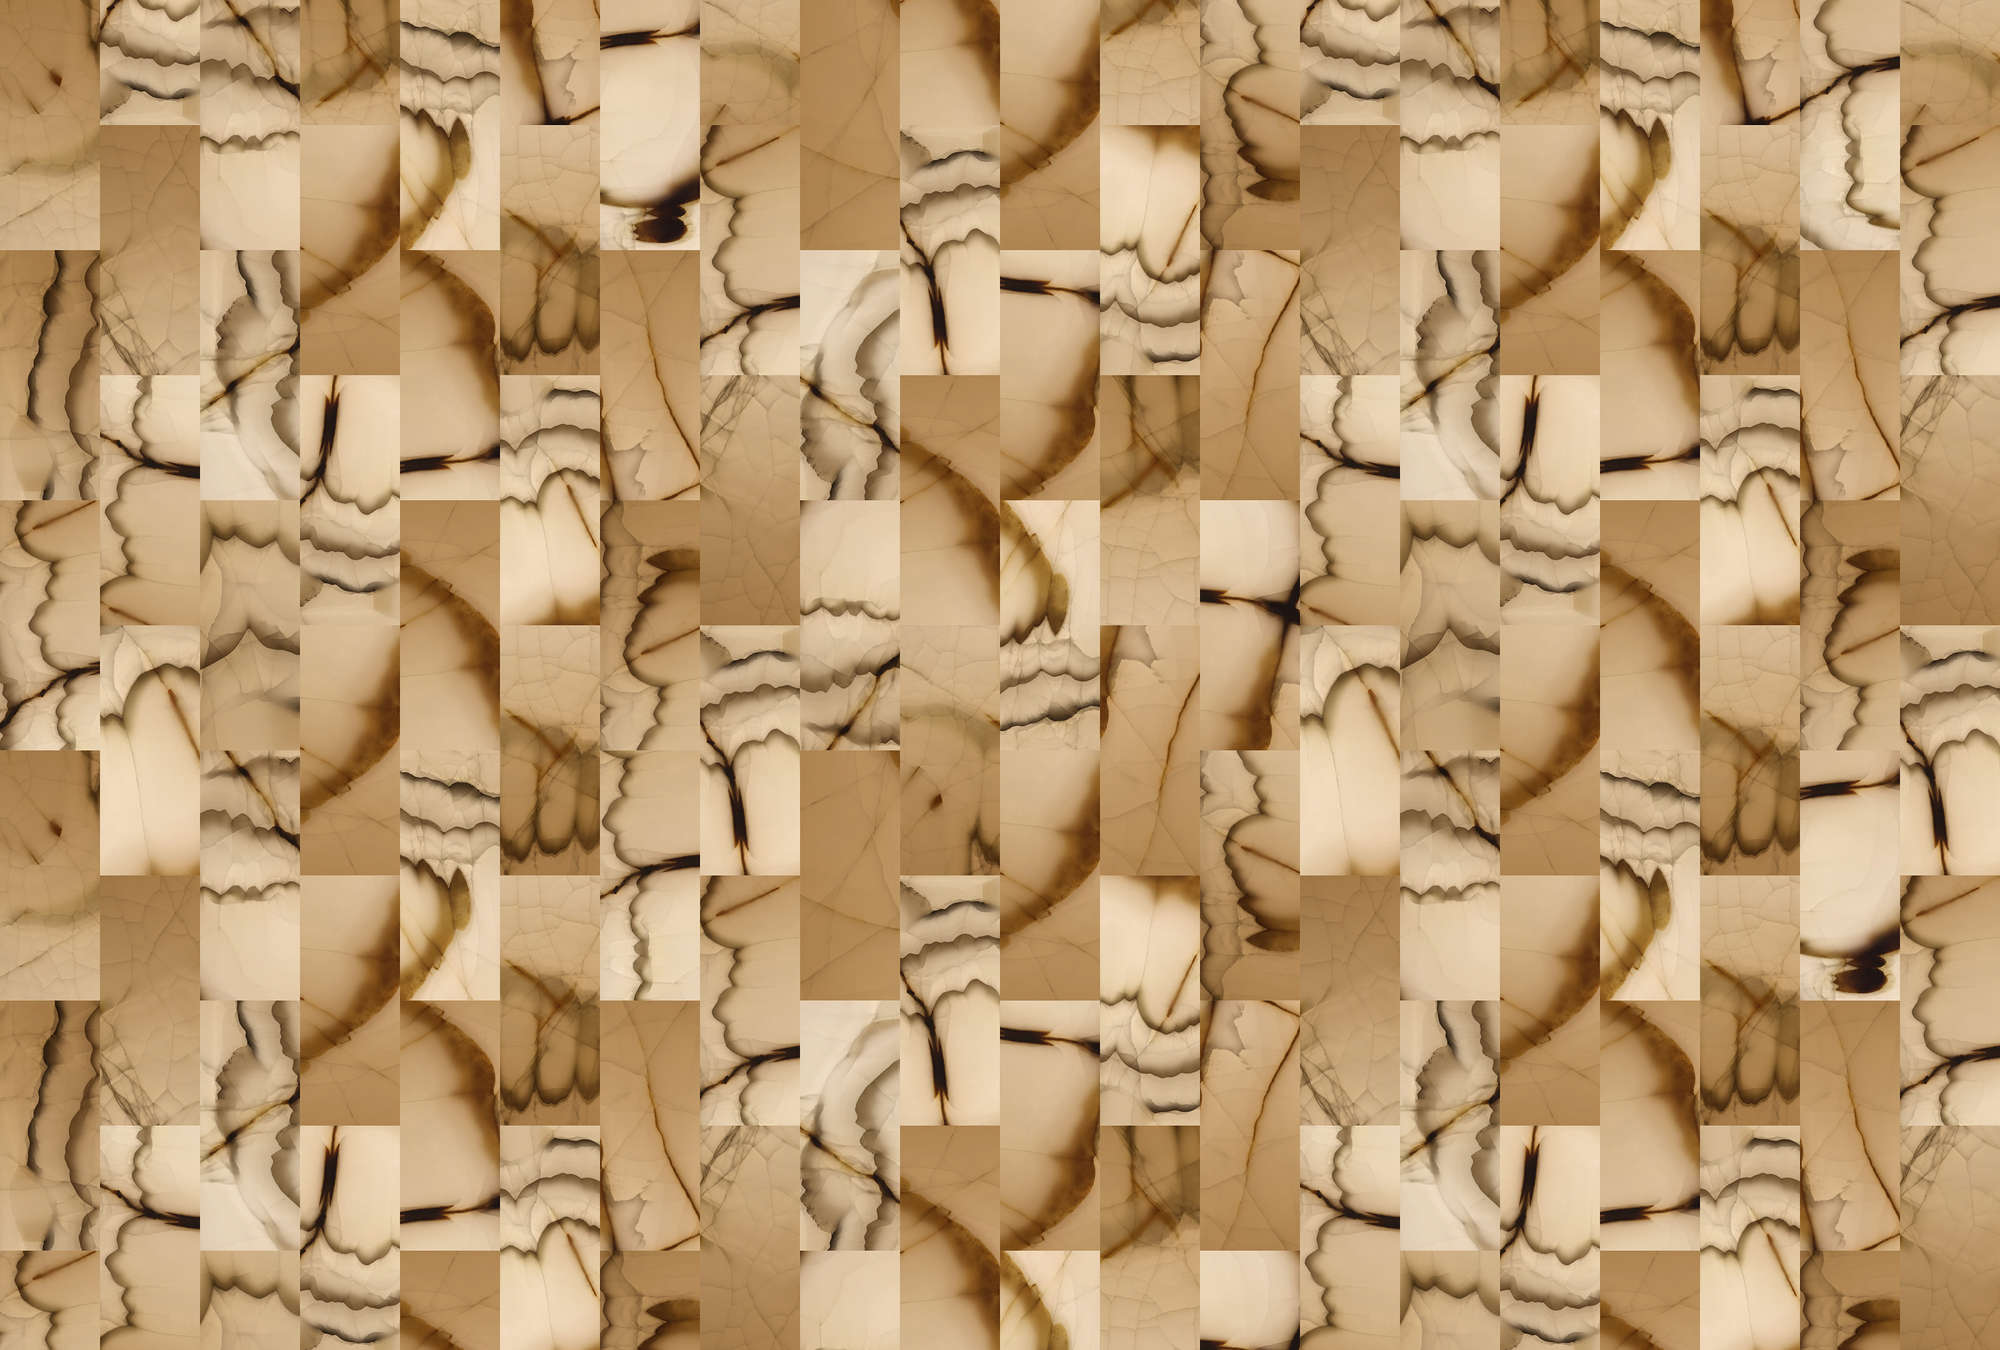             Cut stone 1 - Papier peint abstrait imitation pierre - beige, marron | Intissé lisse mat
        